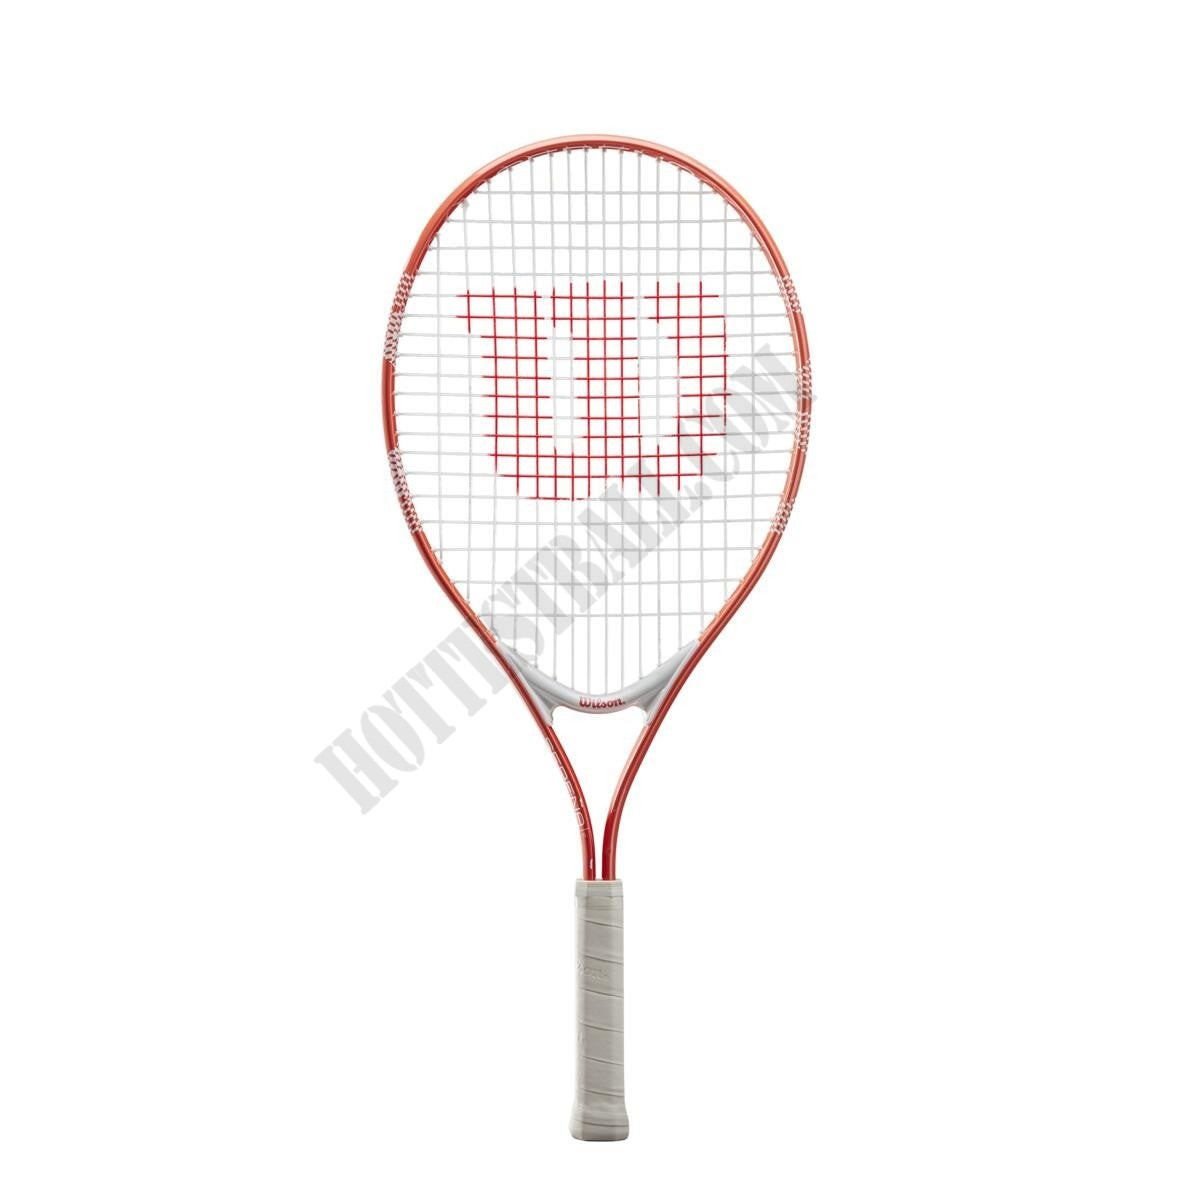 Serena 25 Tennis Racket - Wilson Discount Store - -0